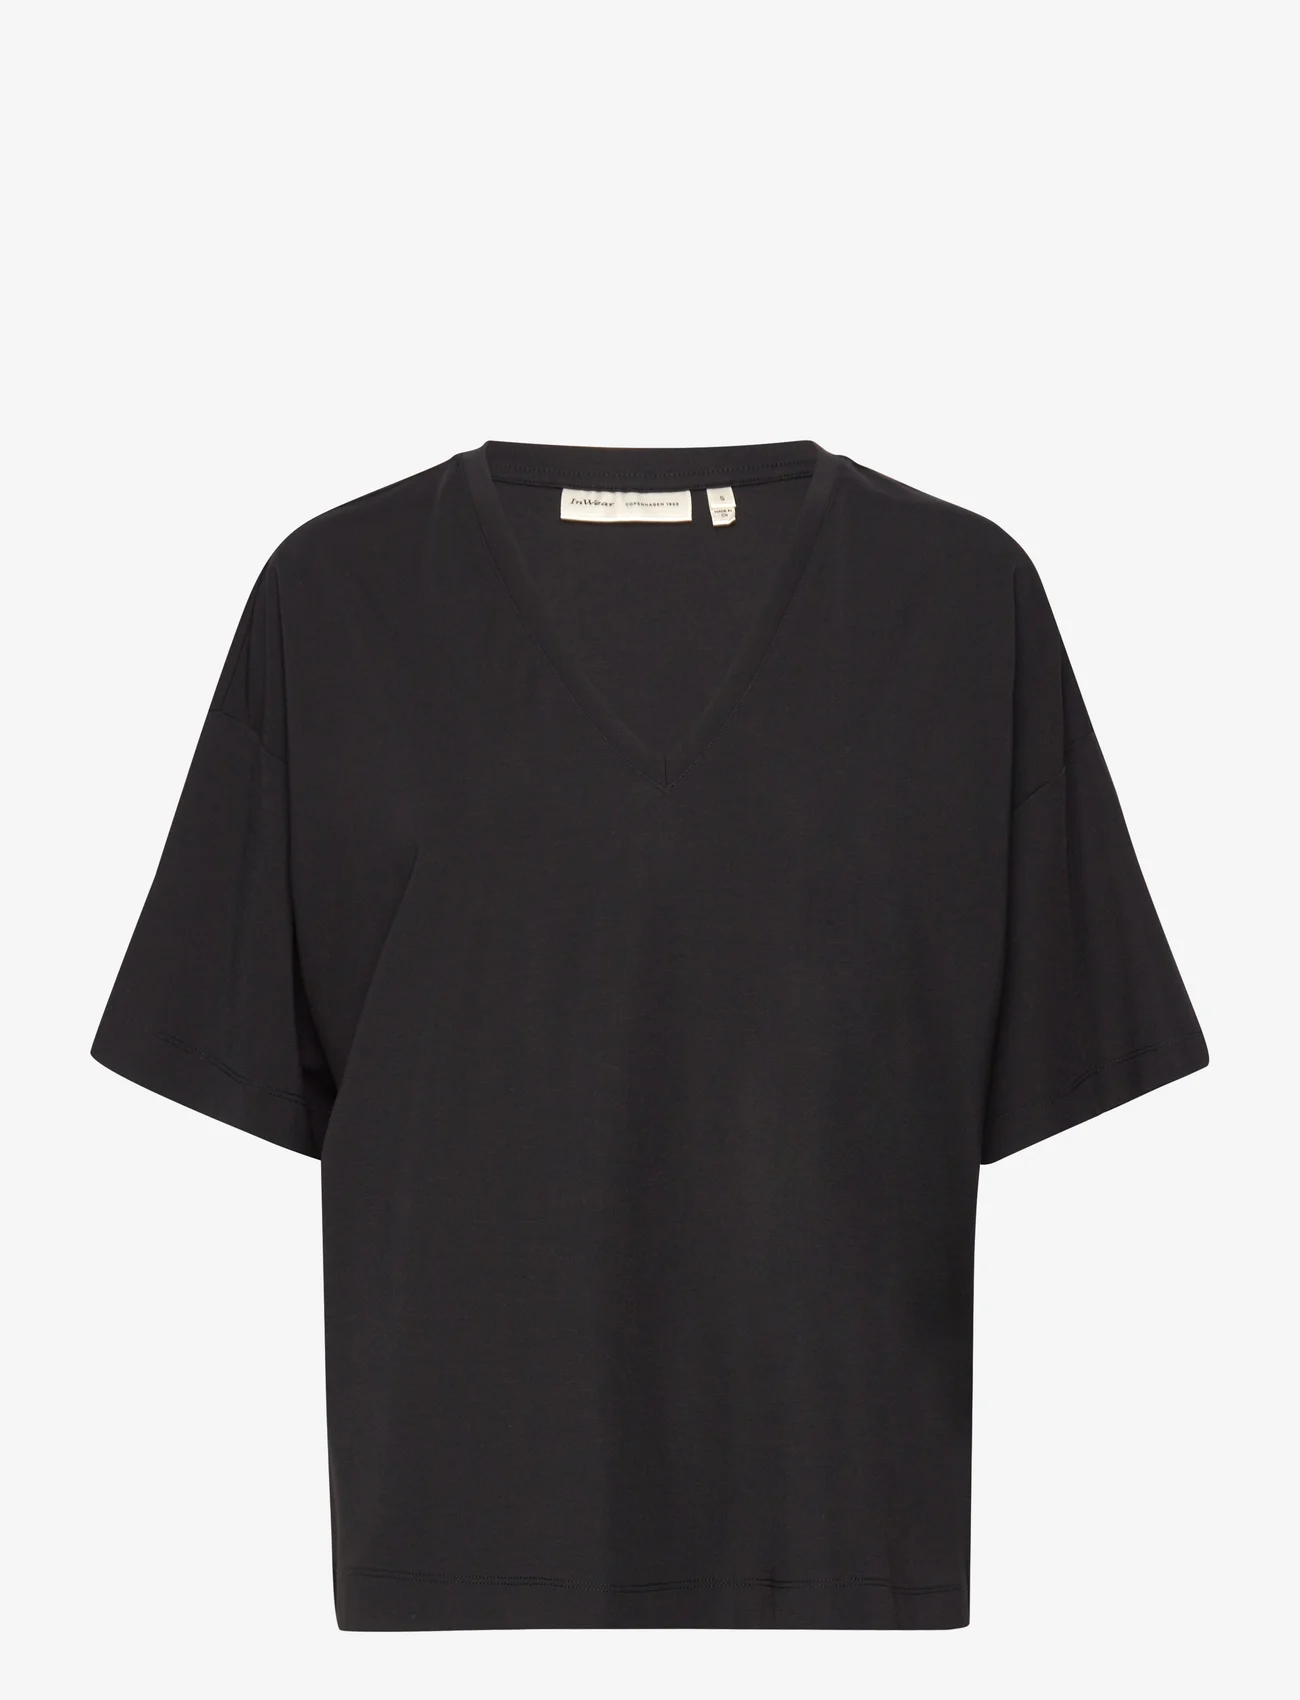 InWear - KasiaIW Tshirt - t-shirts - black - 0